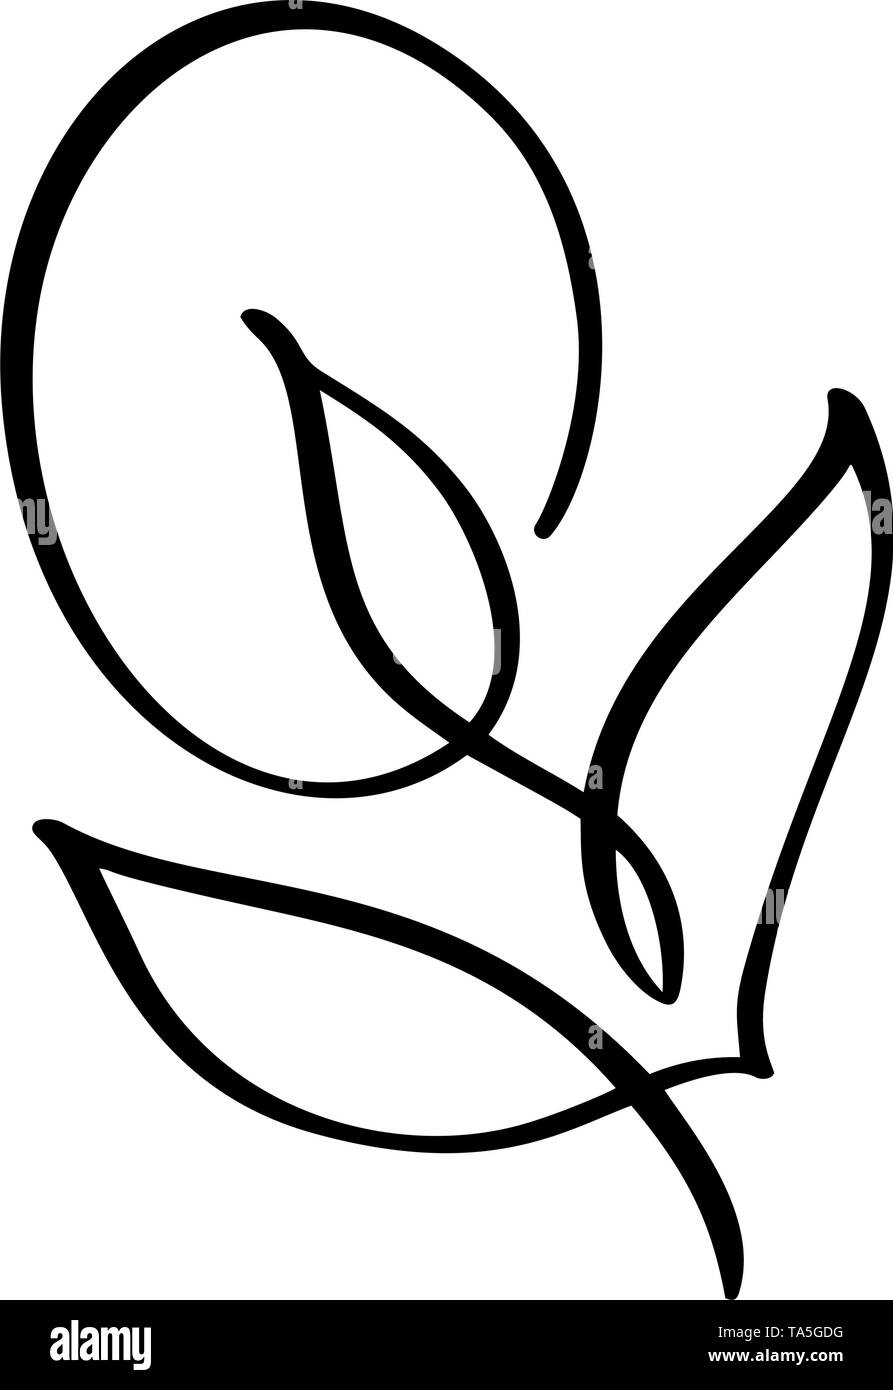 Silhouette vectorielle stylisée de fleur de printemps avec des feuilles isolées sur fond blanc. ECO-signe, label nature. Élément décoratif pour le médical Illustration de Vecteur